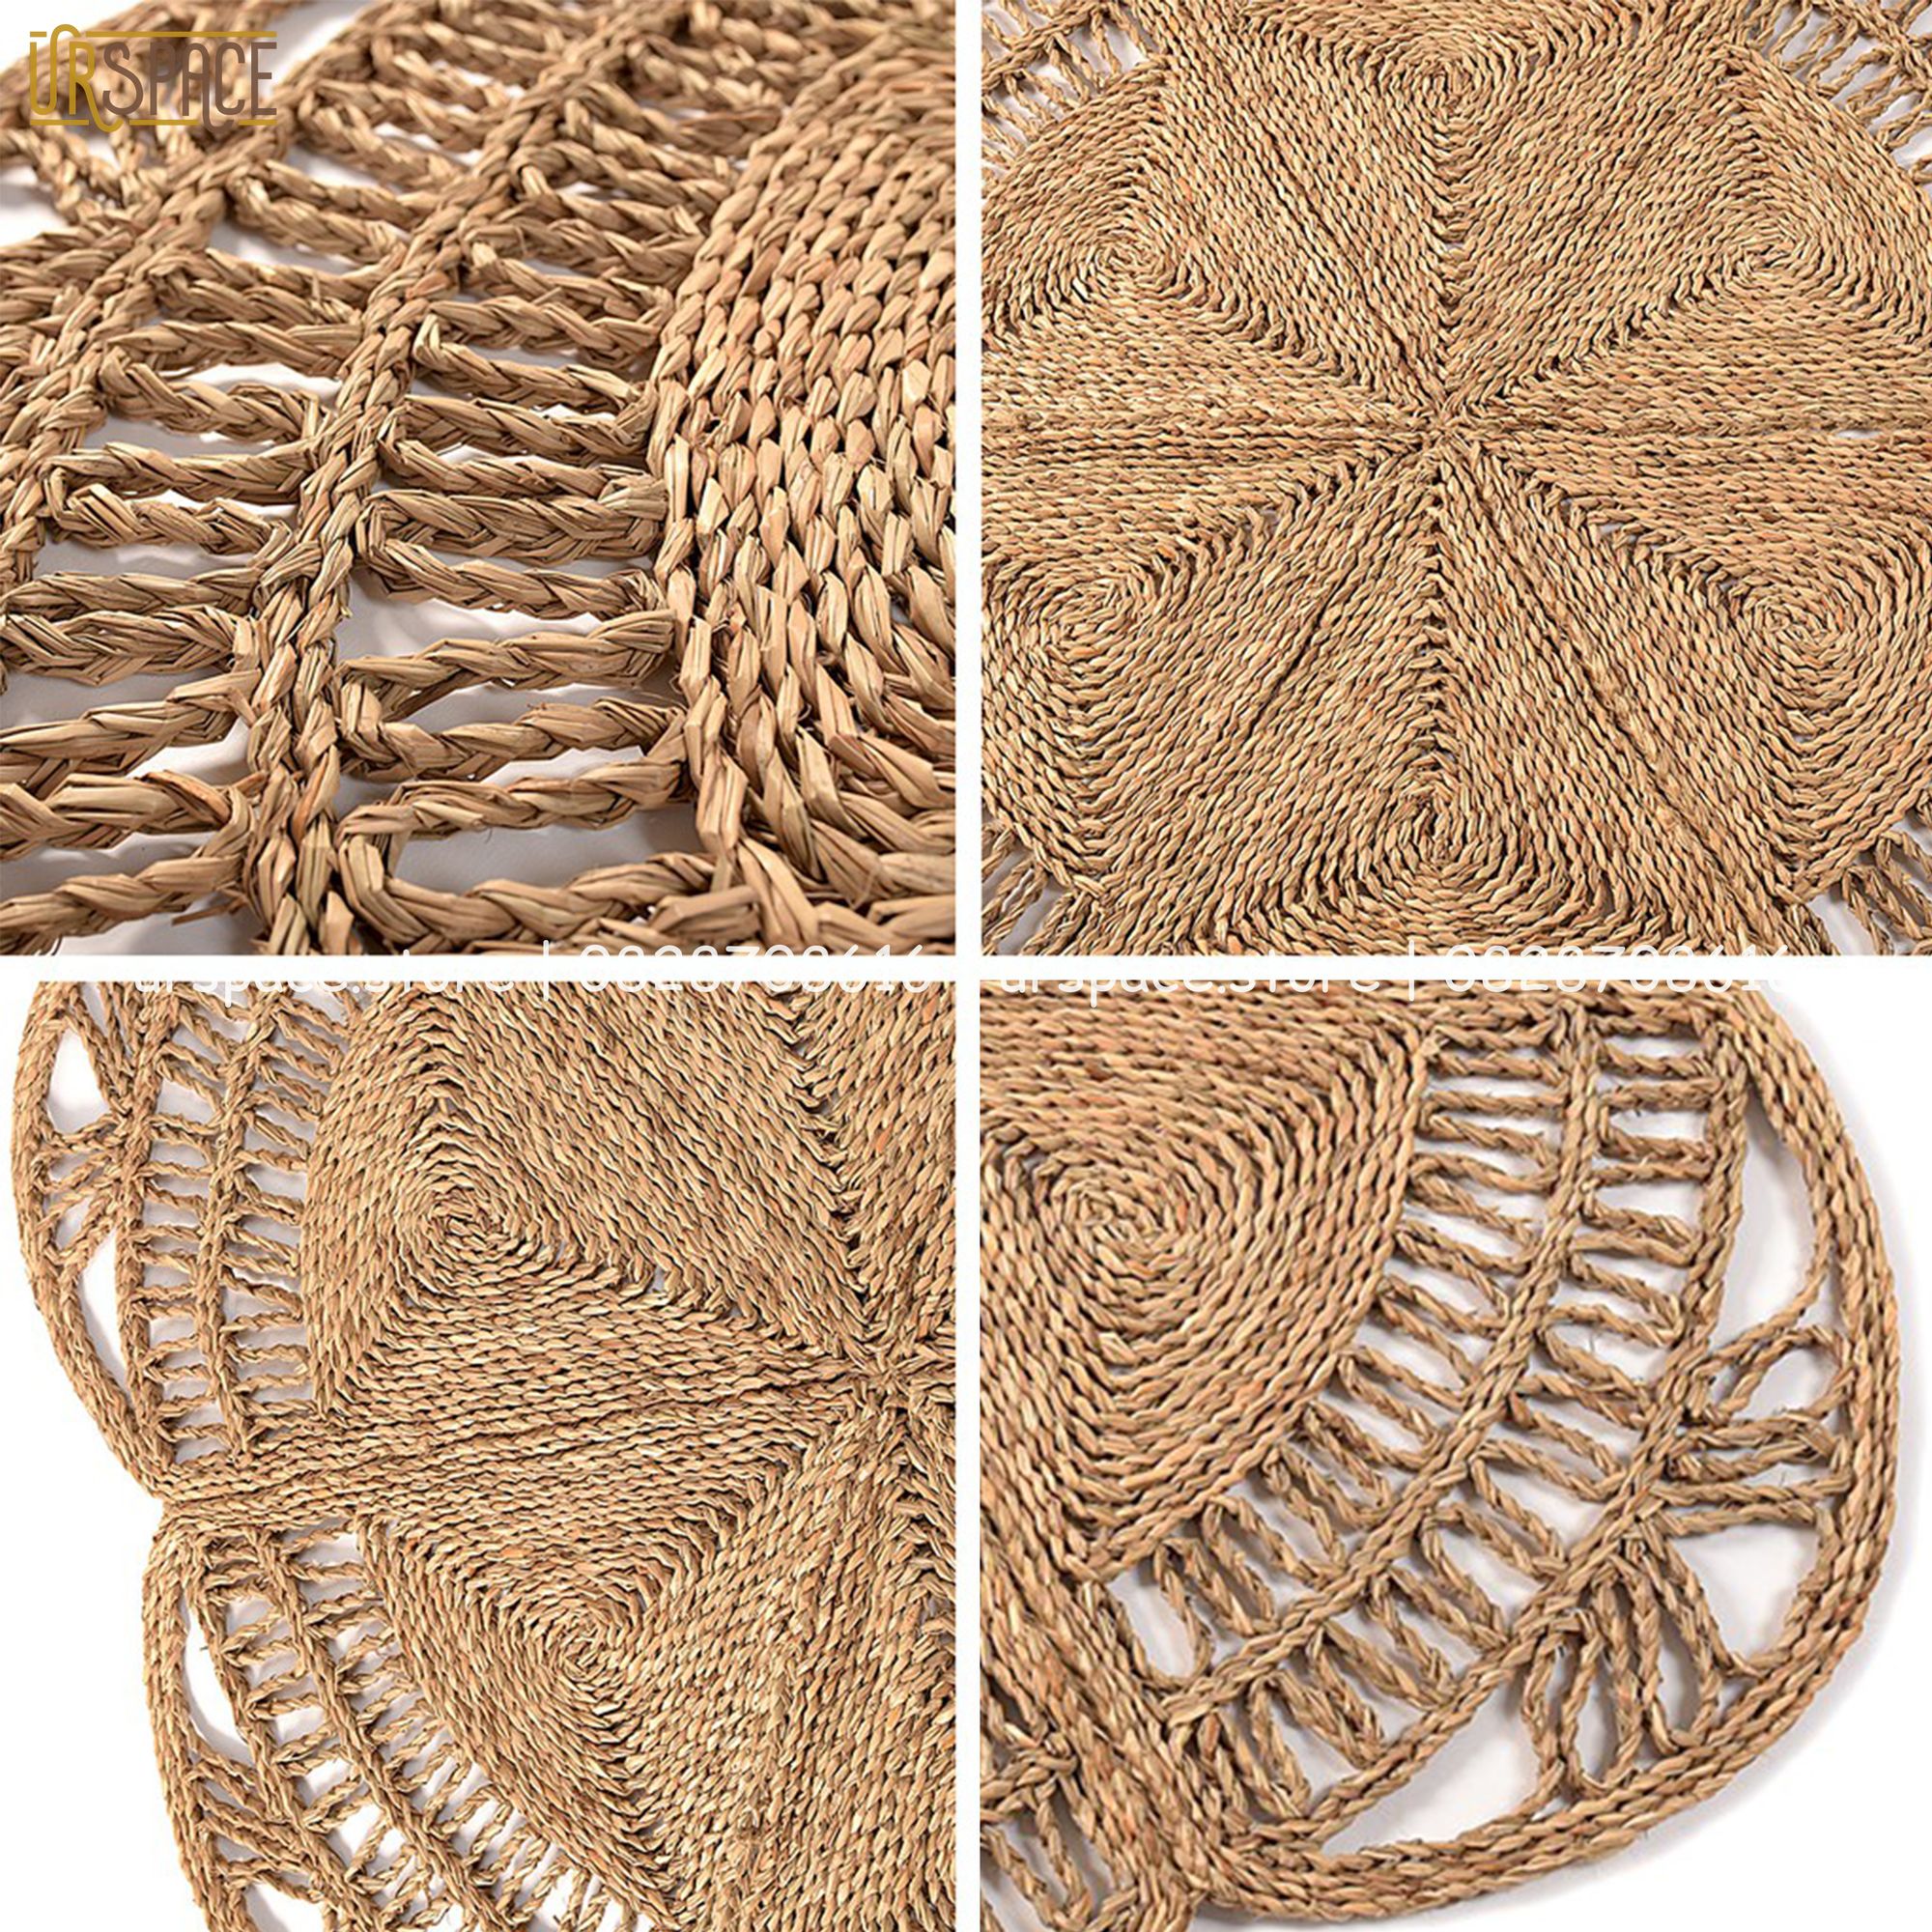 Thảm cói tròn trải sàn trang trí chụp ảnh đường kính 120 cm/ Hand-woven seagrass round rugs for living room